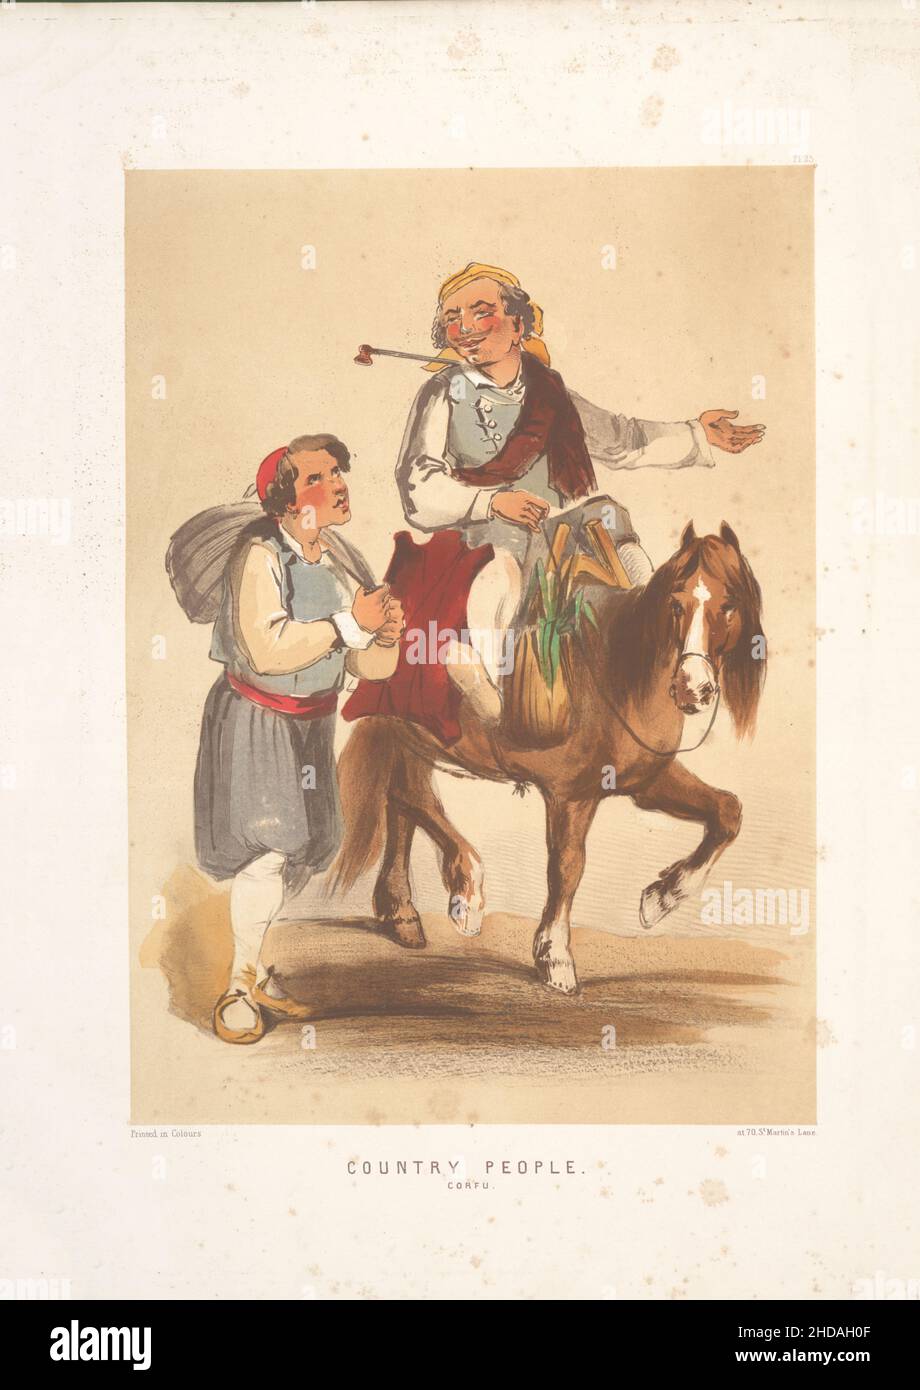 Oldtimer-Farblithographie des Osmanischen Reiches: Country People, Korfu 1854, von Forbes Mac Bean (Künstler) und Justin Sutcliffe (Lithograph) Stockfoto